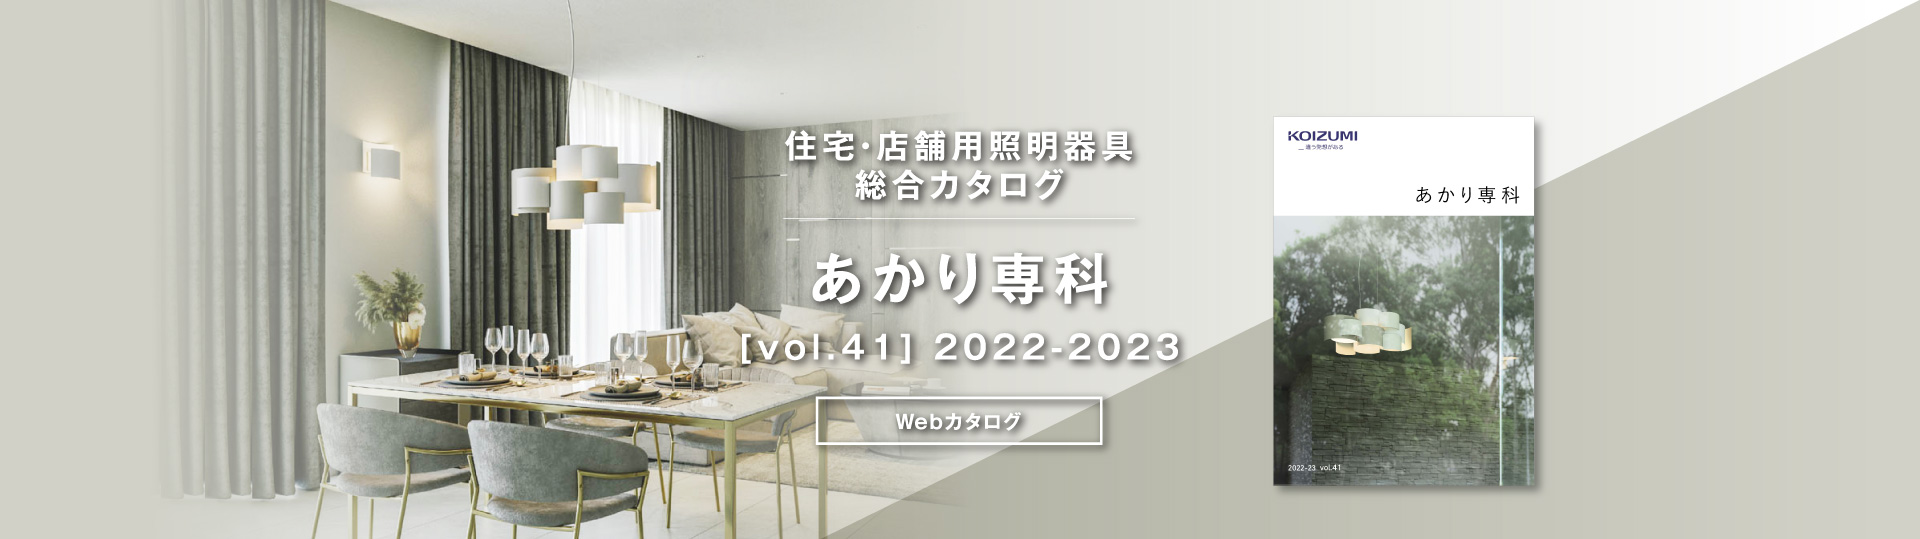 住宅照明器具カタログ あかり専科[vol.41] 2022-2023